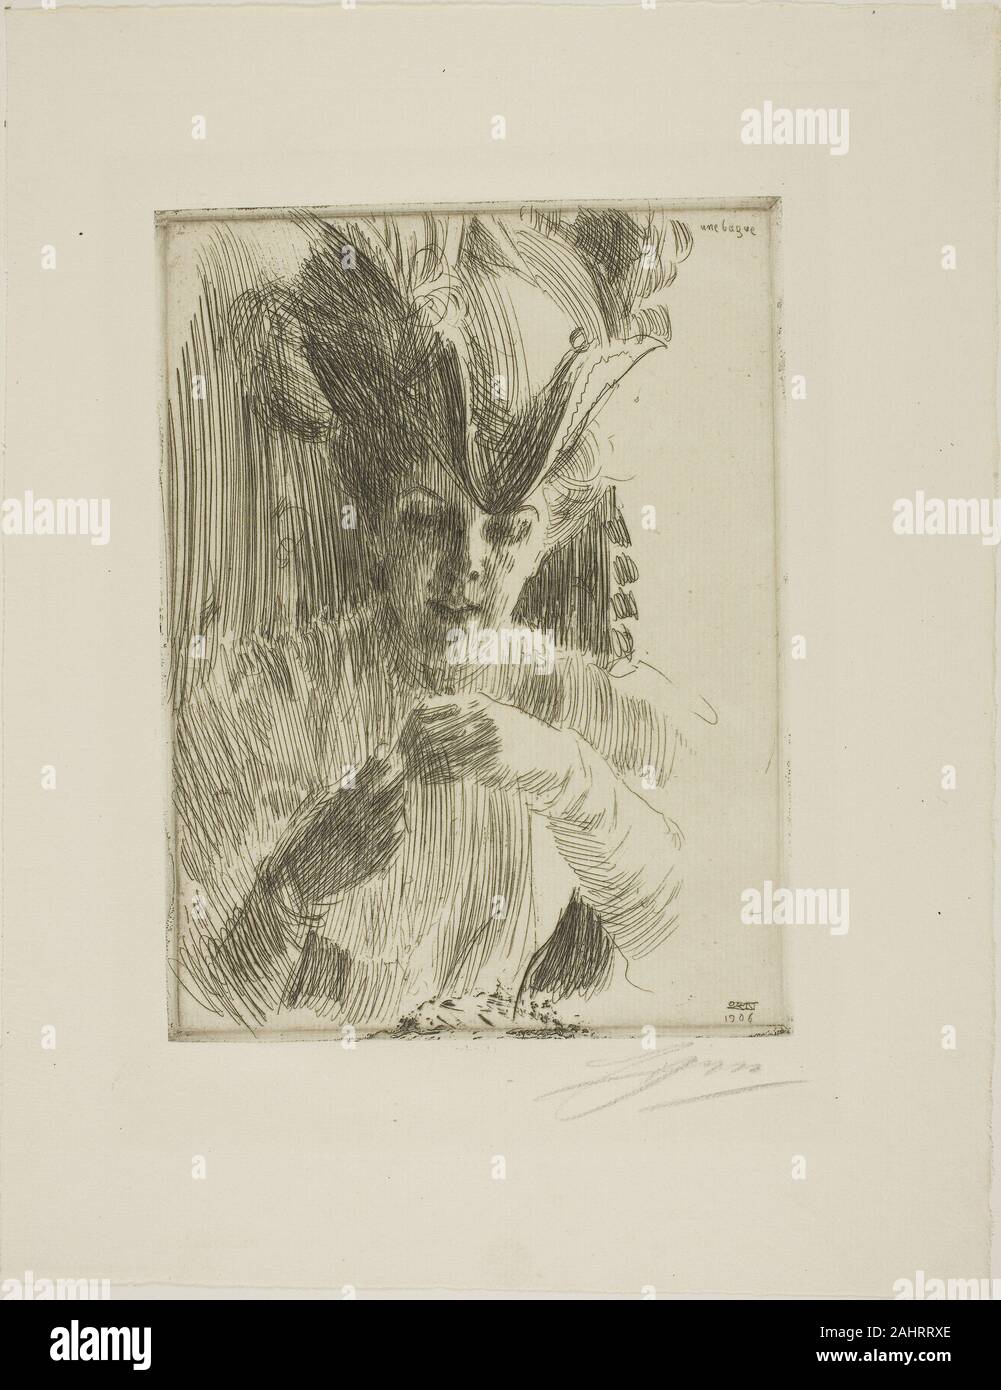 Anders Zorn. Un anneau. 1906. La Suède. Gravure sur papier vergé ivoire Banque D'Images